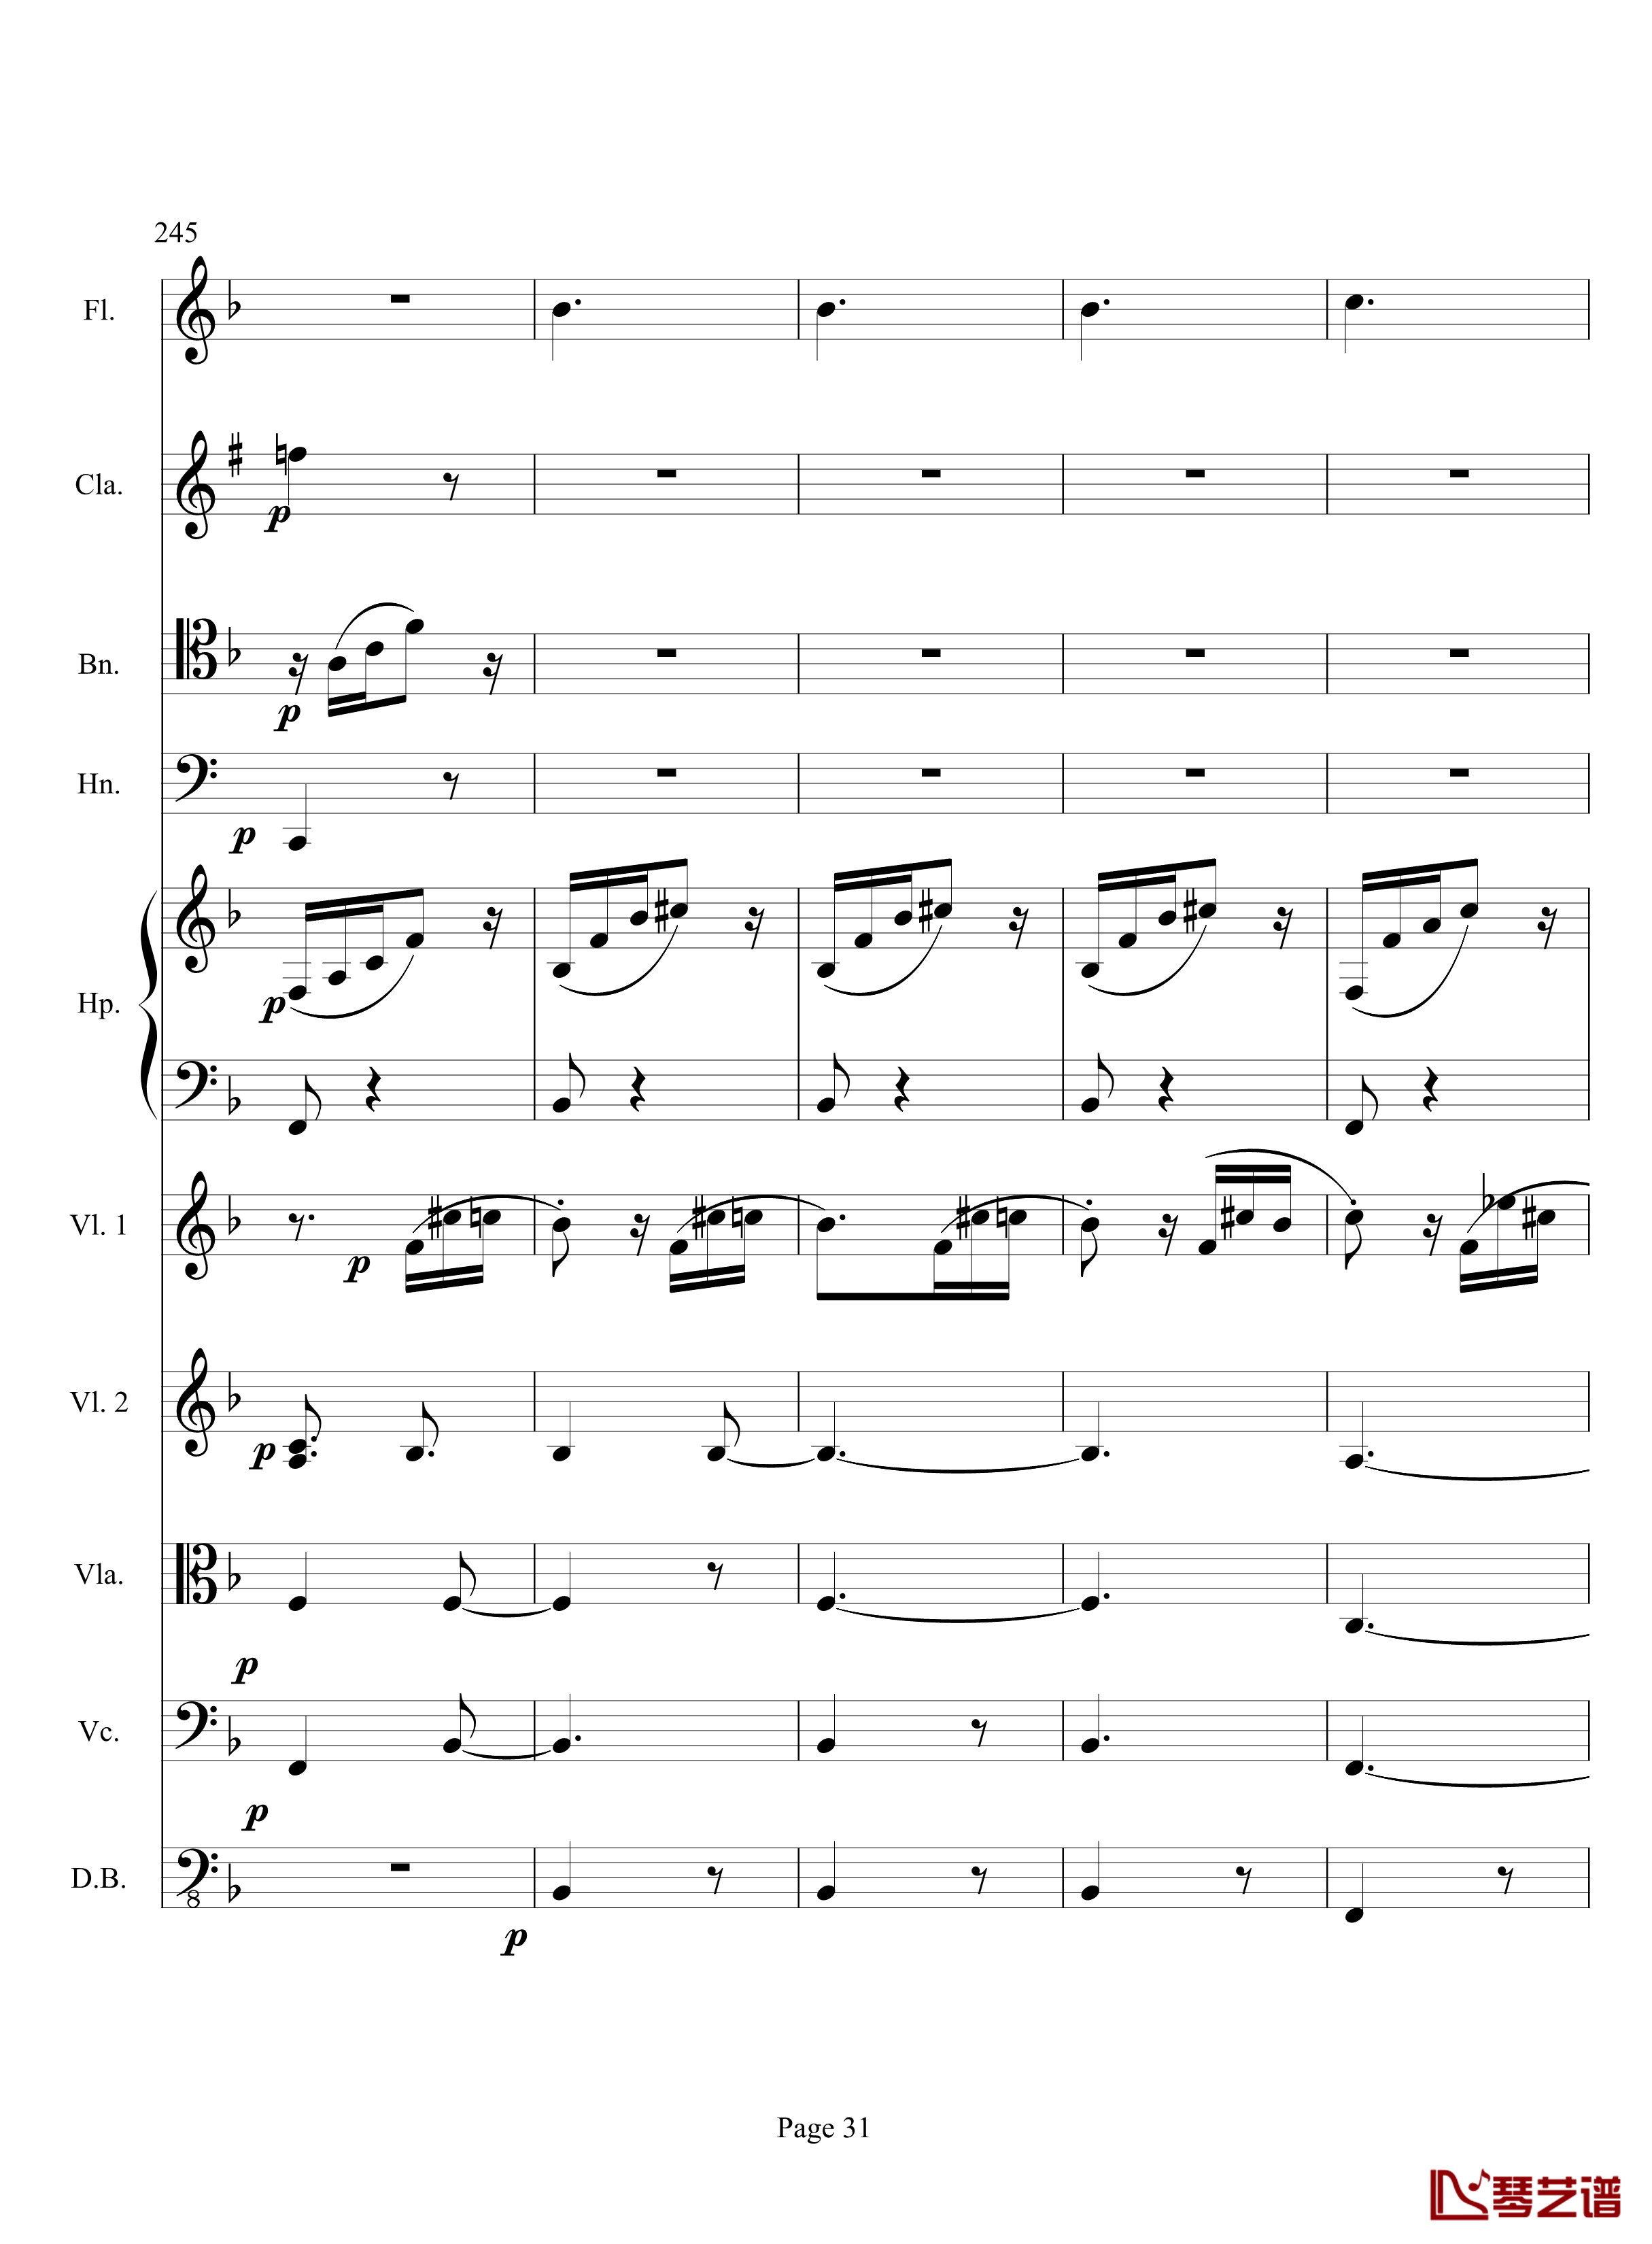 奏鸣曲之交响钢琴谱-第17首-Ⅲ-贝多芬-beethoven31